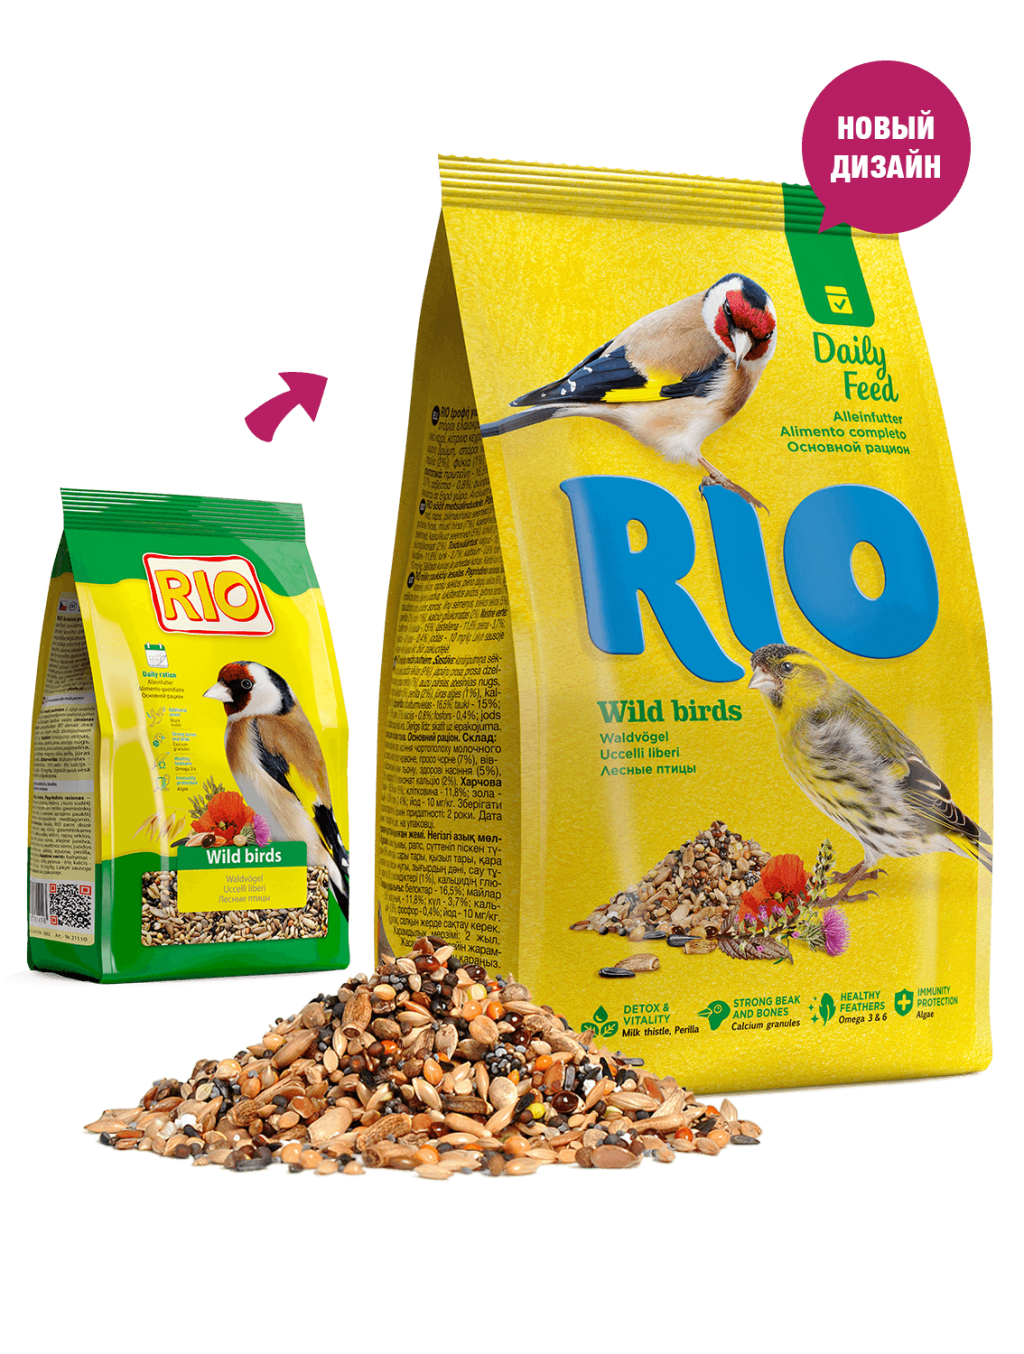 Рио Корм для лесных птиц основной 500 г, Rio